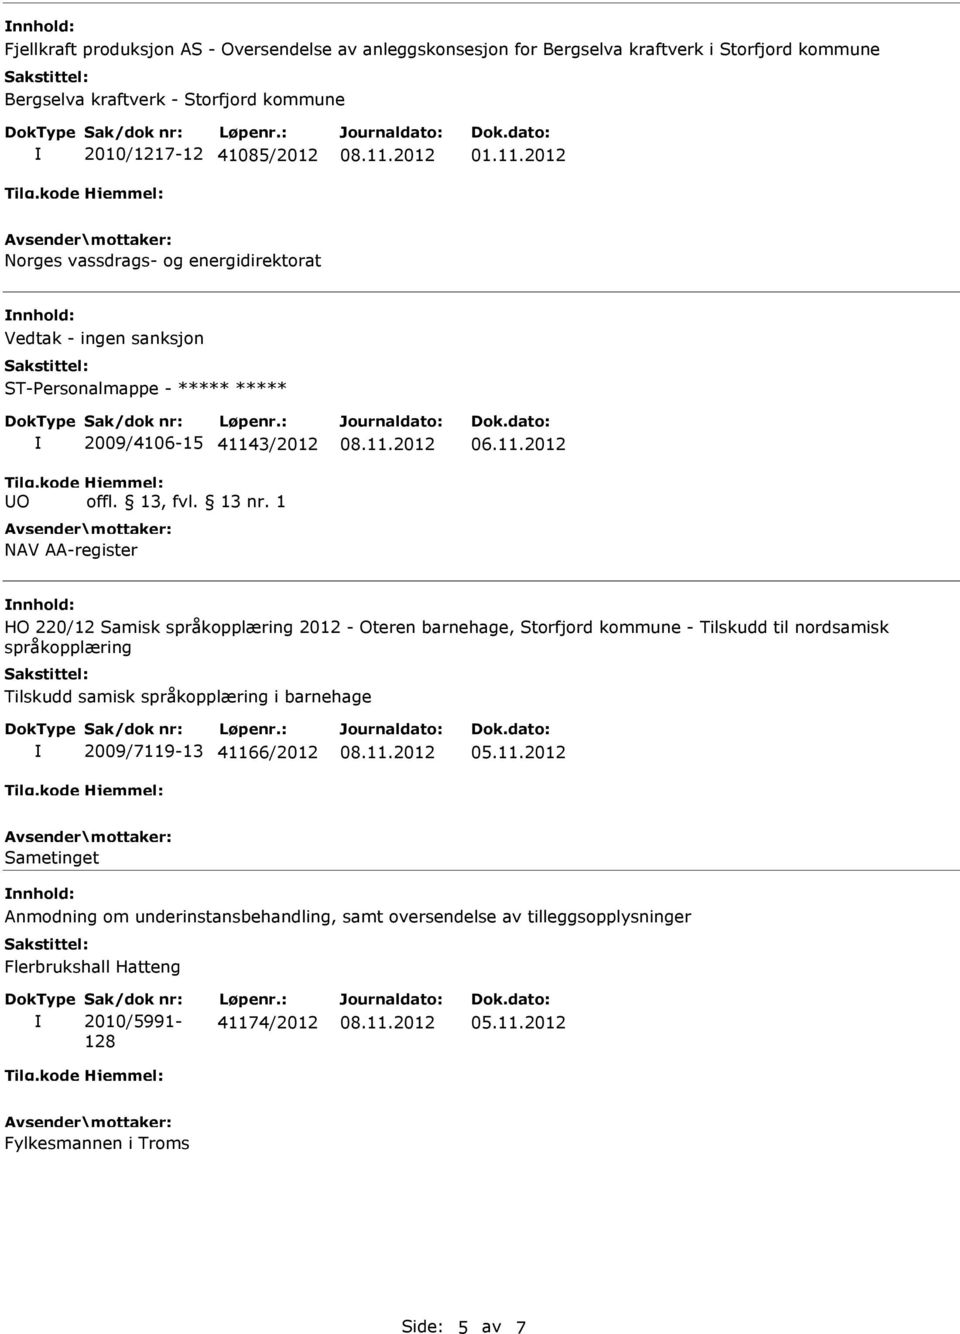 barnehage, Storfjord kommune - Tilskudd til nordsamisk språkopplæring Tilskudd samisk språkopplæring i barnehage 2009/7119